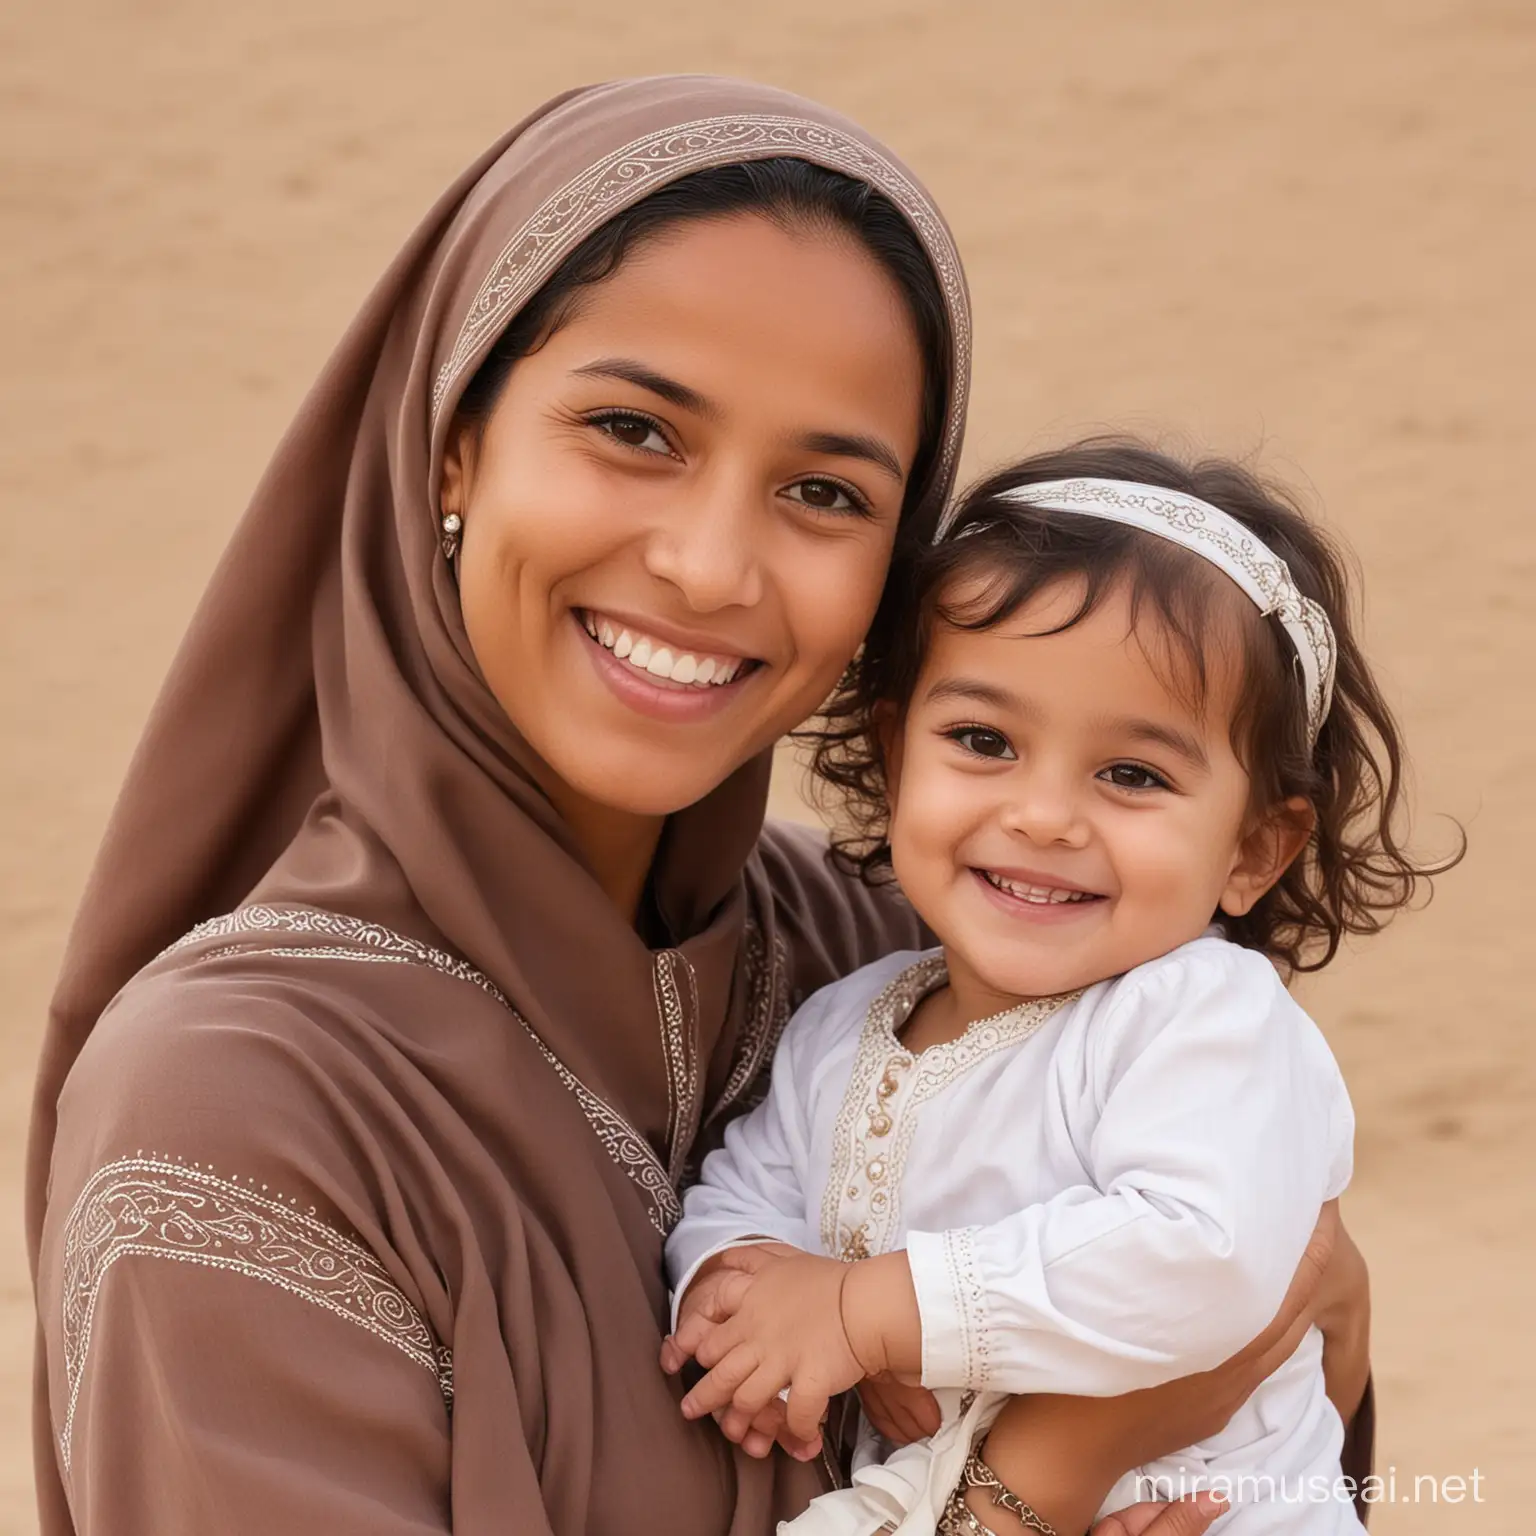 Joyful Omani Mother with Girl Kid and Baby Smiling